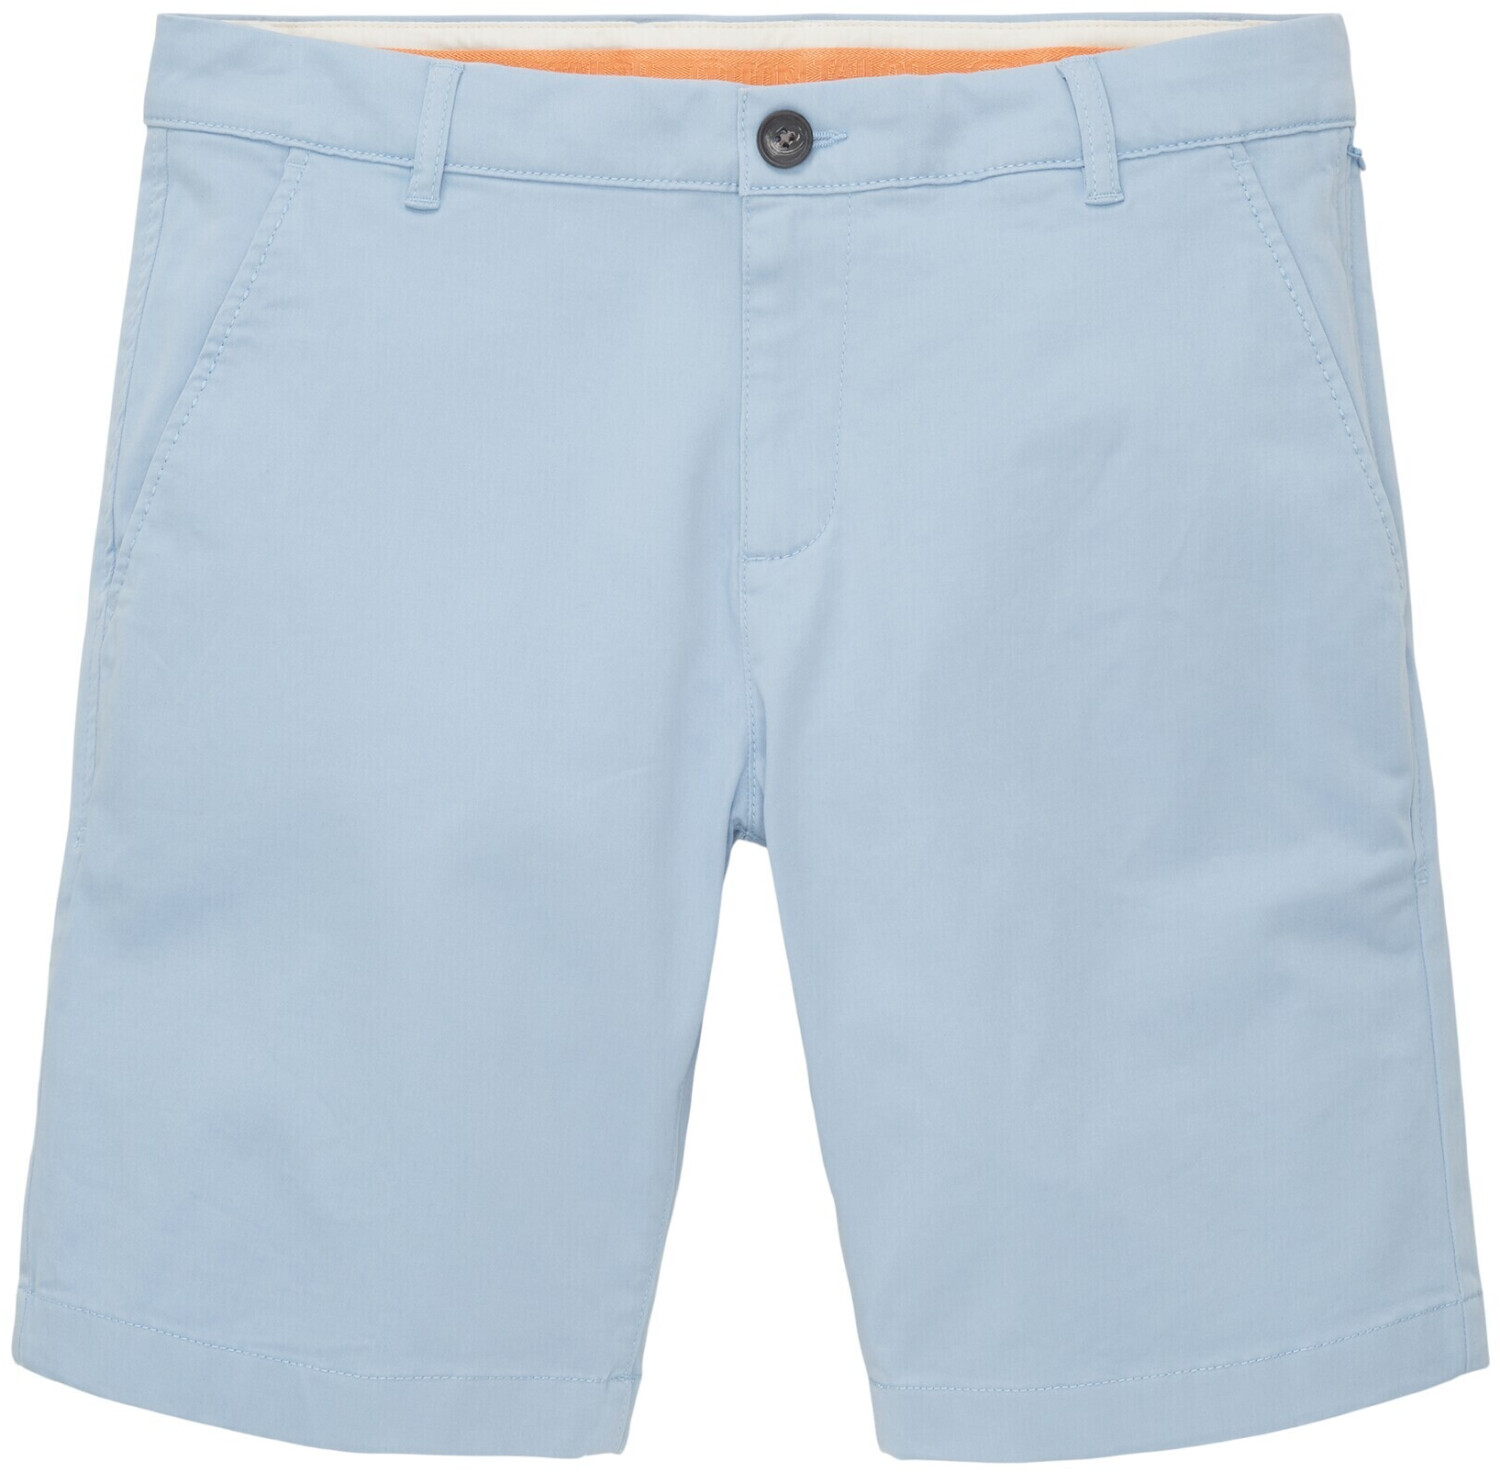 Tom Tailor Chino Shorts (1036309-17550) soft powder blue ab 17,52 € |  Preisvergleich bei